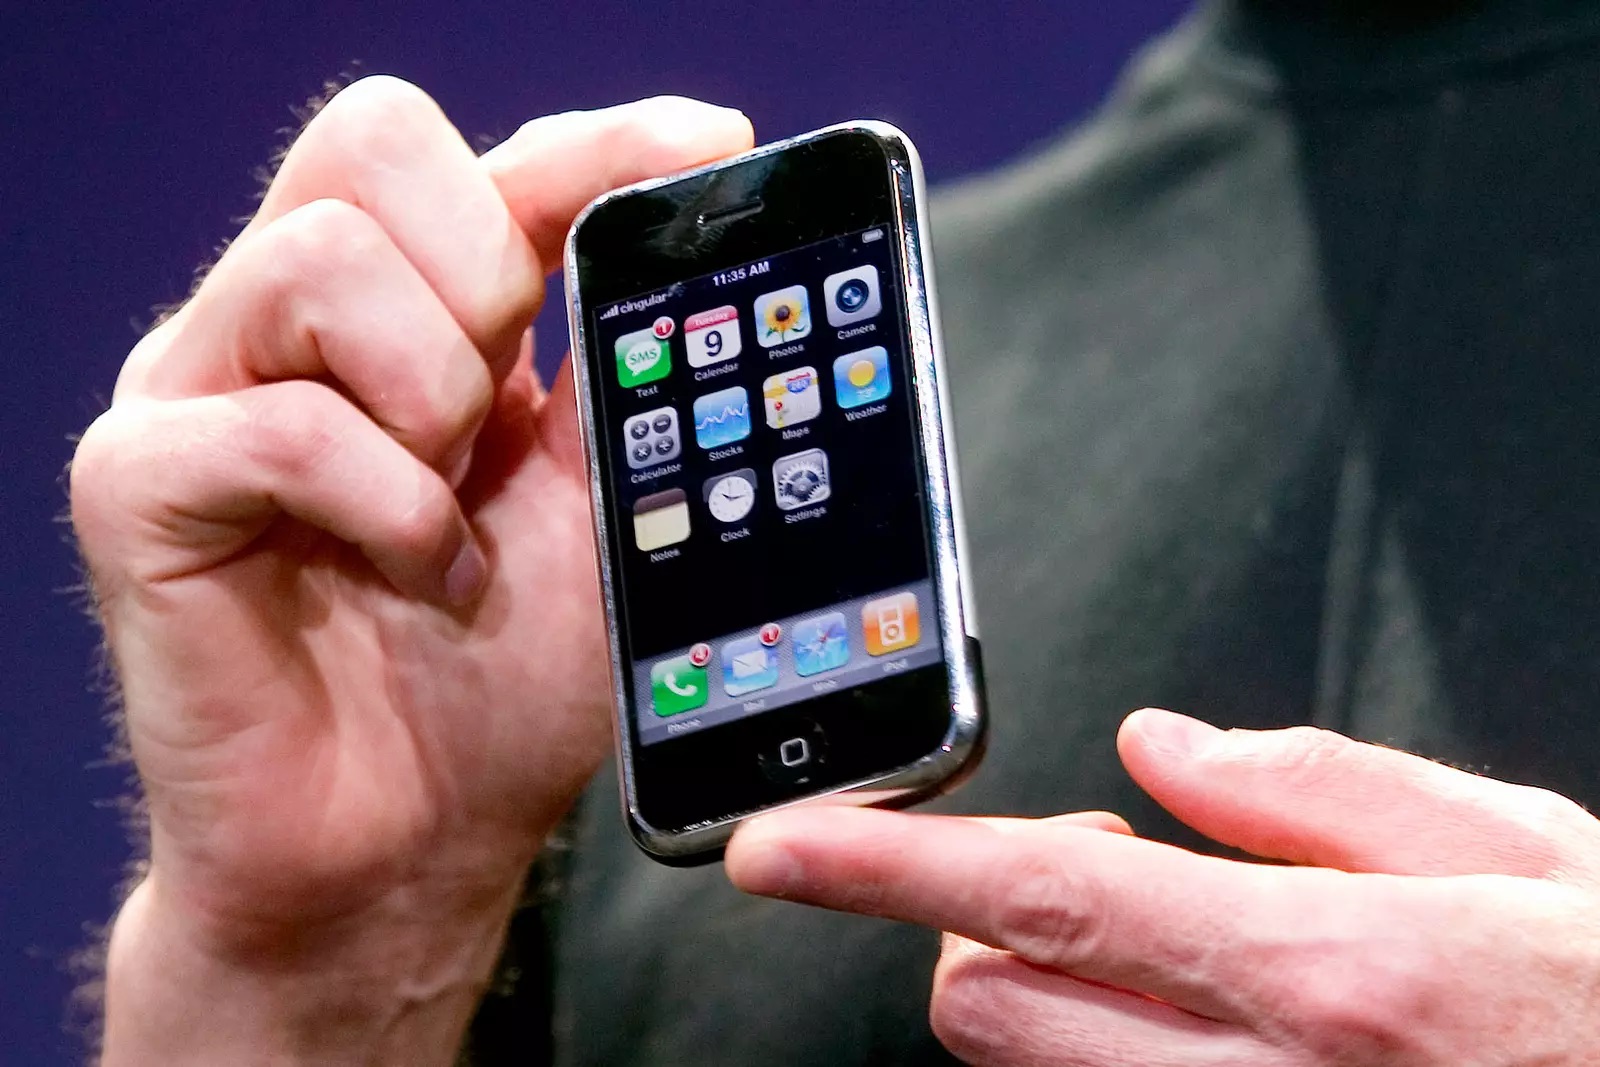 Sigillato, mai usato: il primo iPhone venduto all'asta per 55.000 dollari